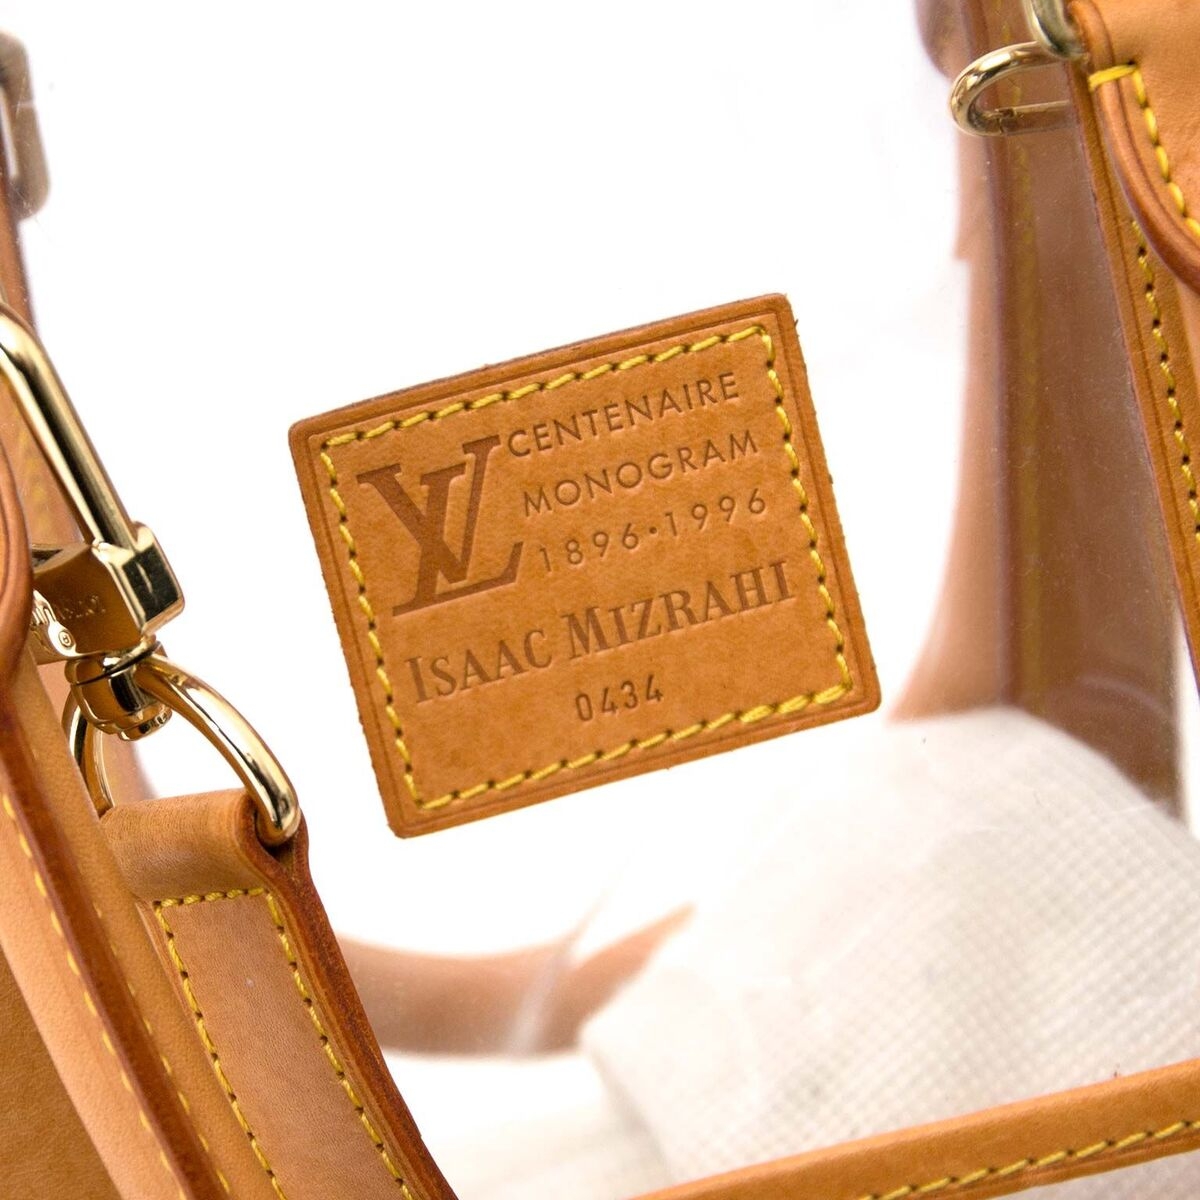 Louis Vuitton, Isaac Mizrahi Birth clear translucent pvc travel